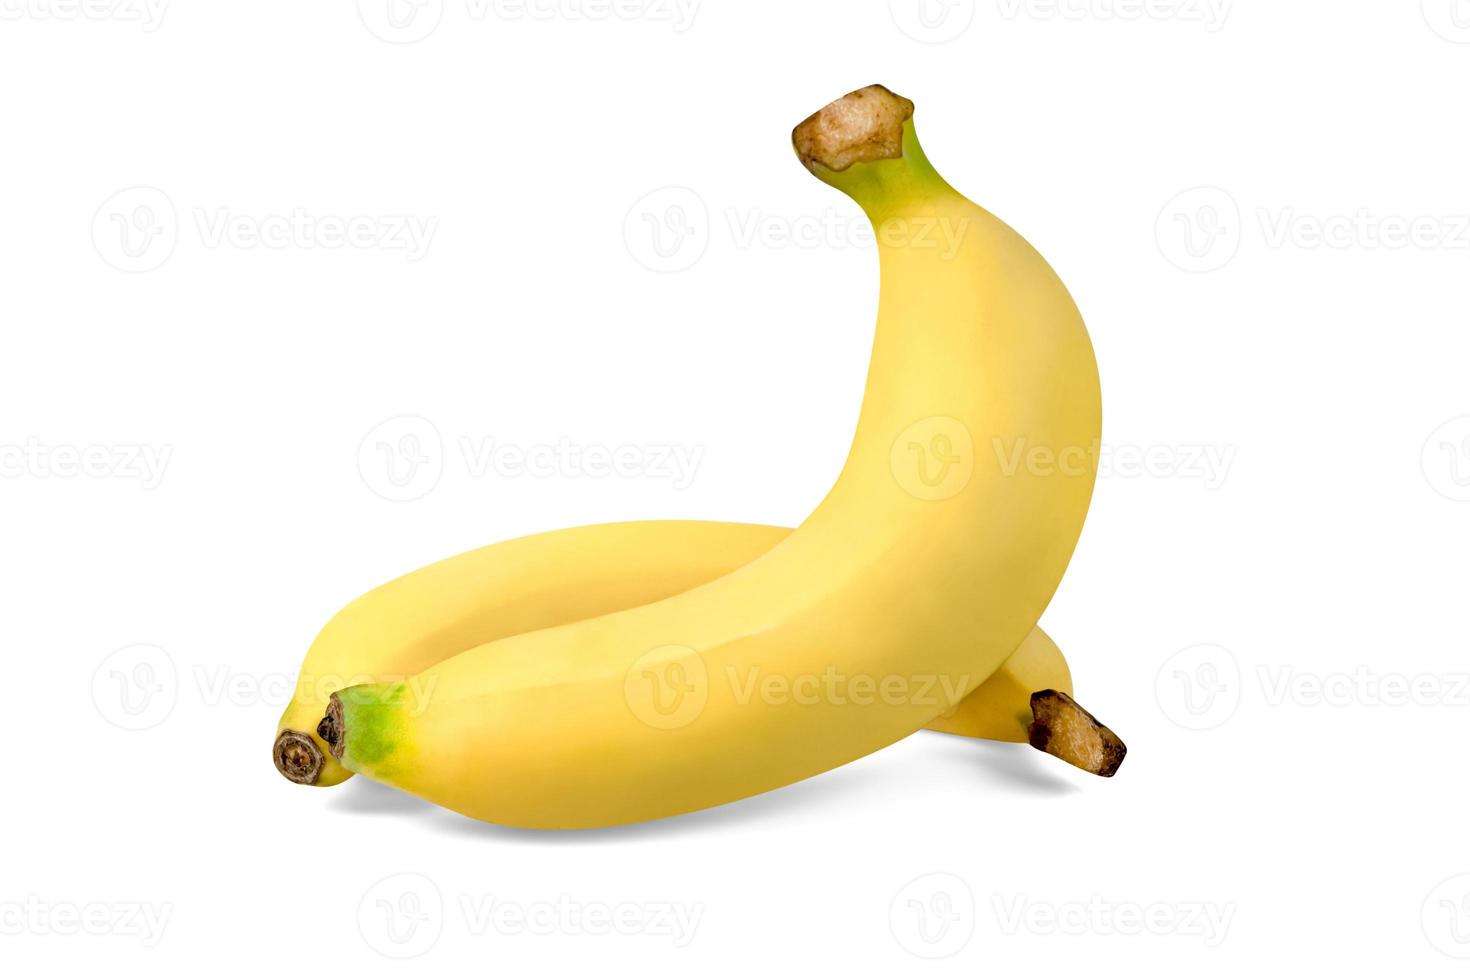 Plátano maduro aislado sobre fondo blanco, incluye trazado de recorte foto